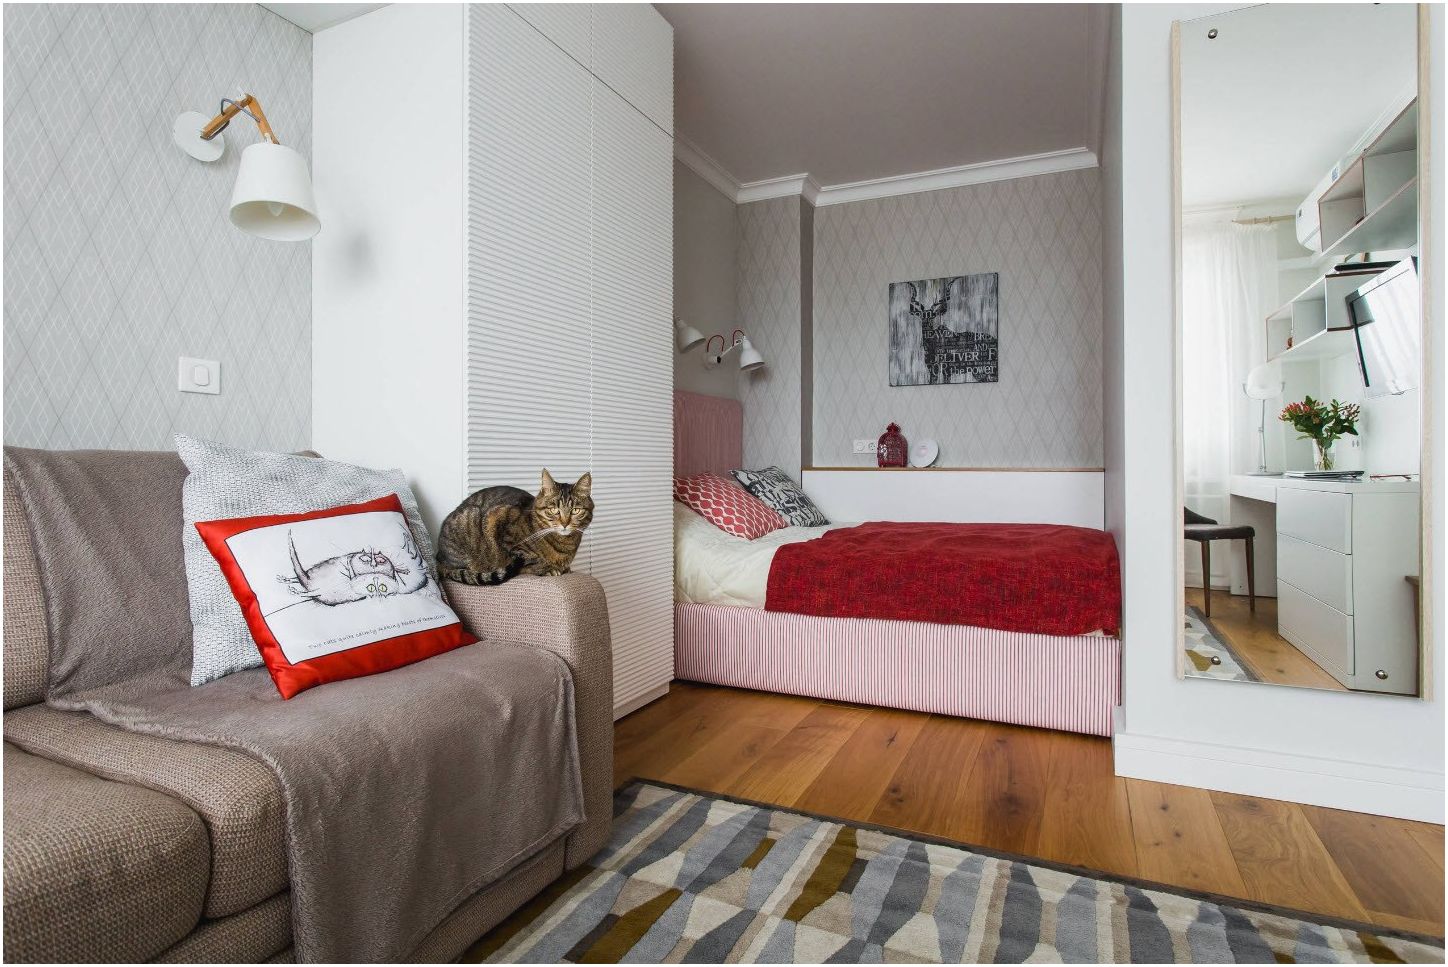 أمثلة ناجحة للجمع بين غرفة نوم وغرفة معيشة في غرفة واحدة